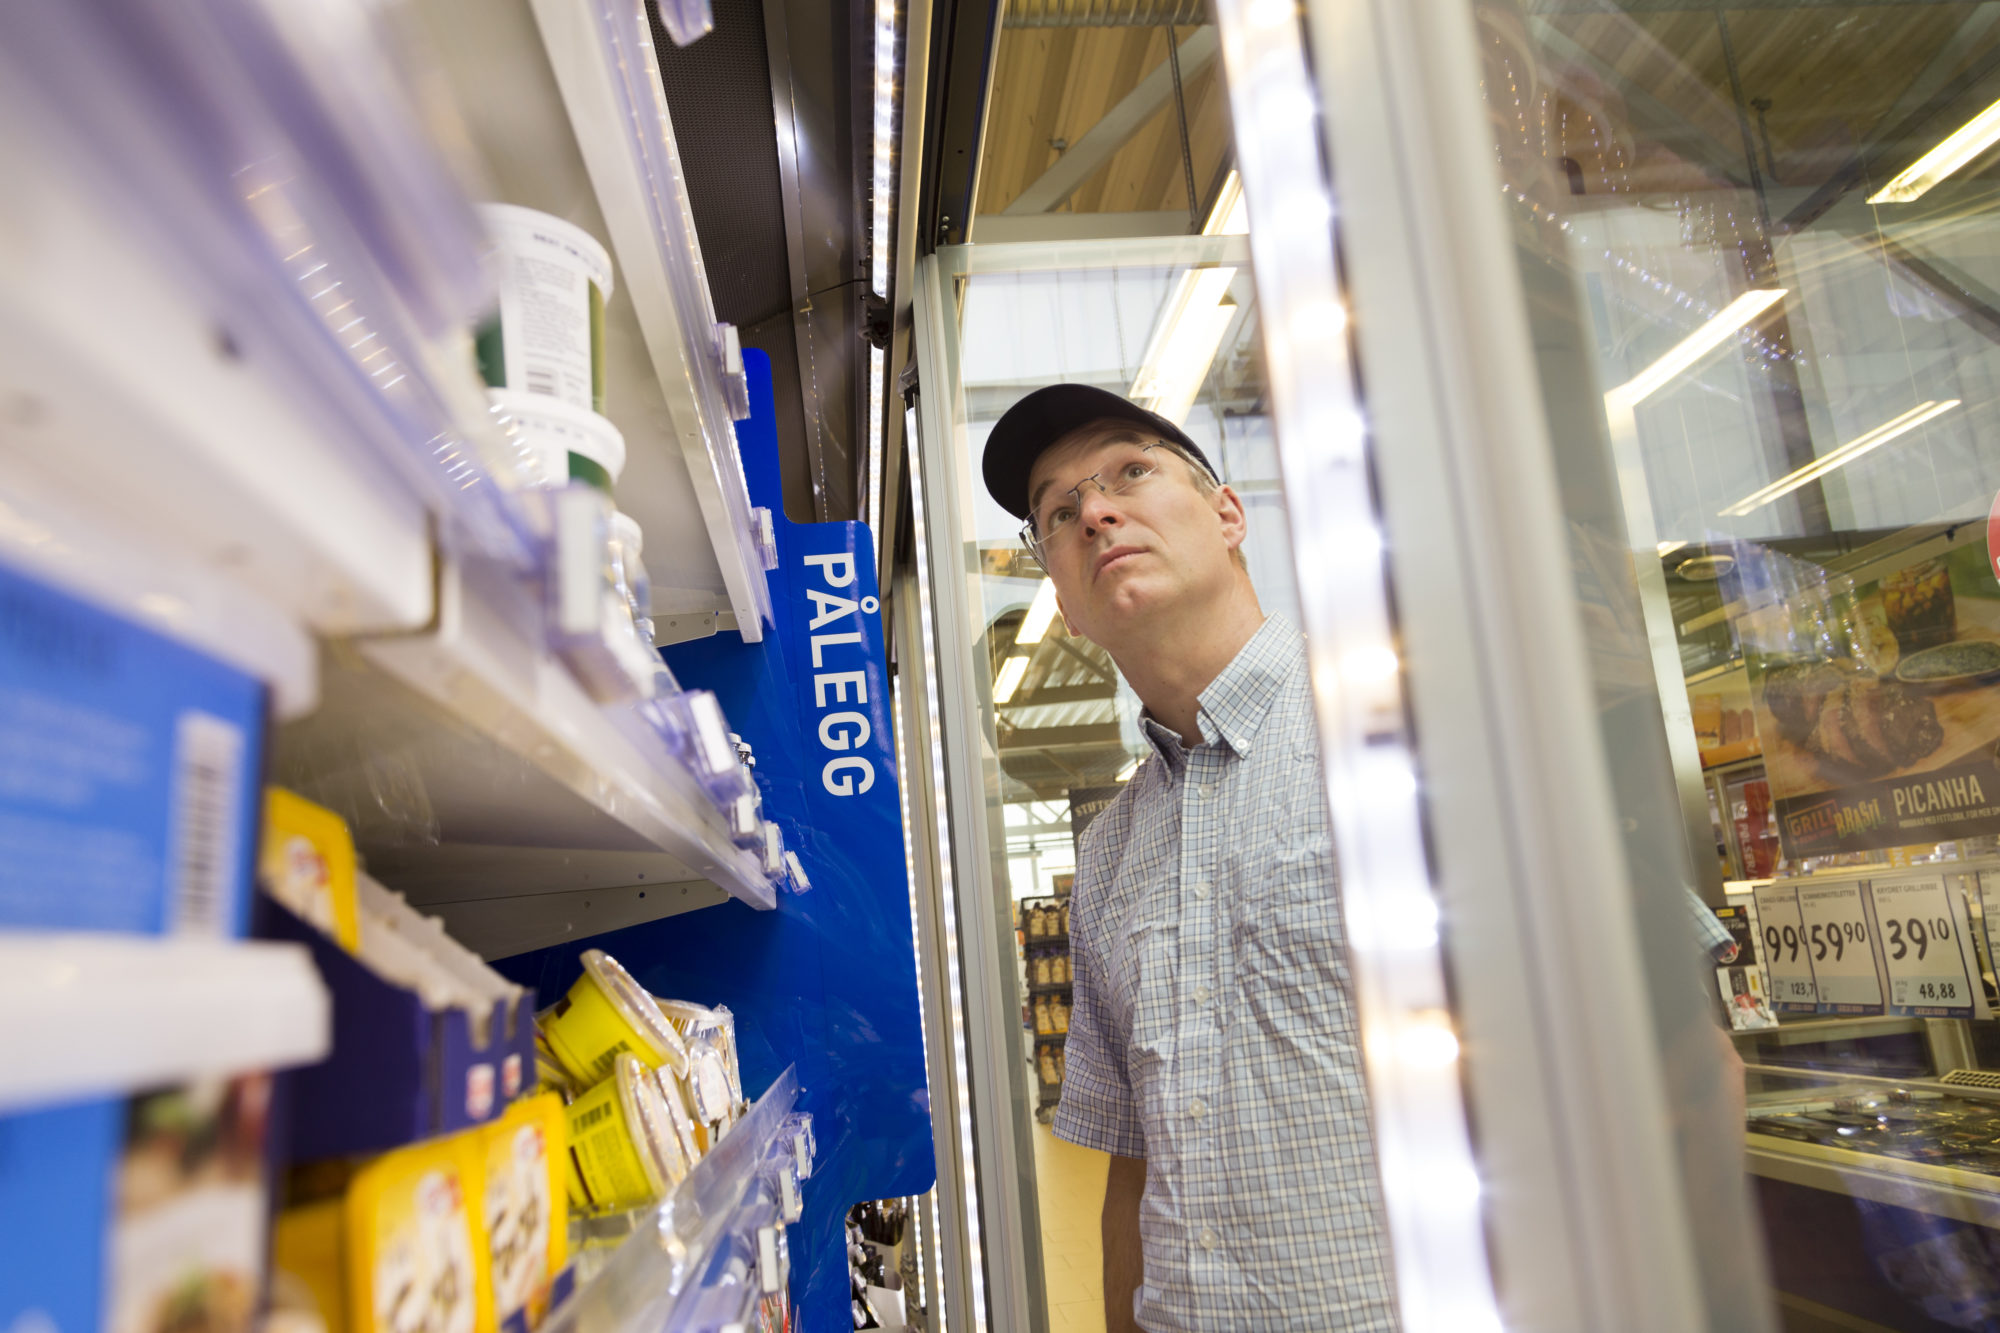 Mann med med blå skjermlue/caps ser inn i kjøledisk på Rema-butikk